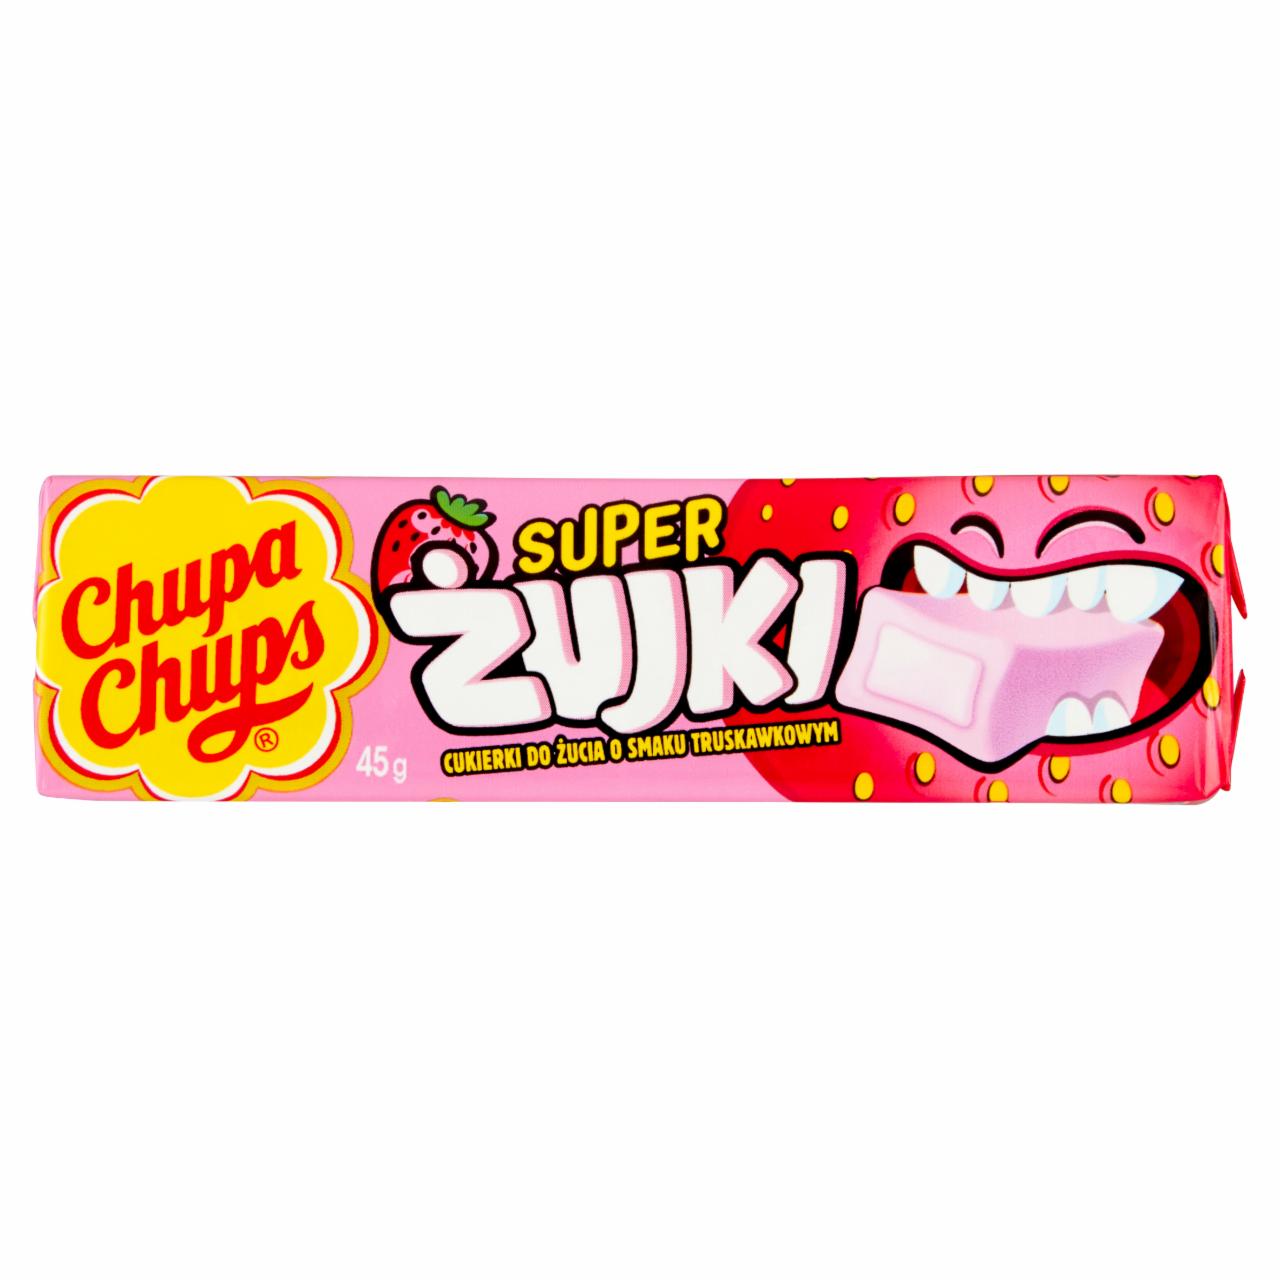 Zdjęcia - Chupa Chups Super żujki Cukierki do żucia o smaku truskawkowym 45 g